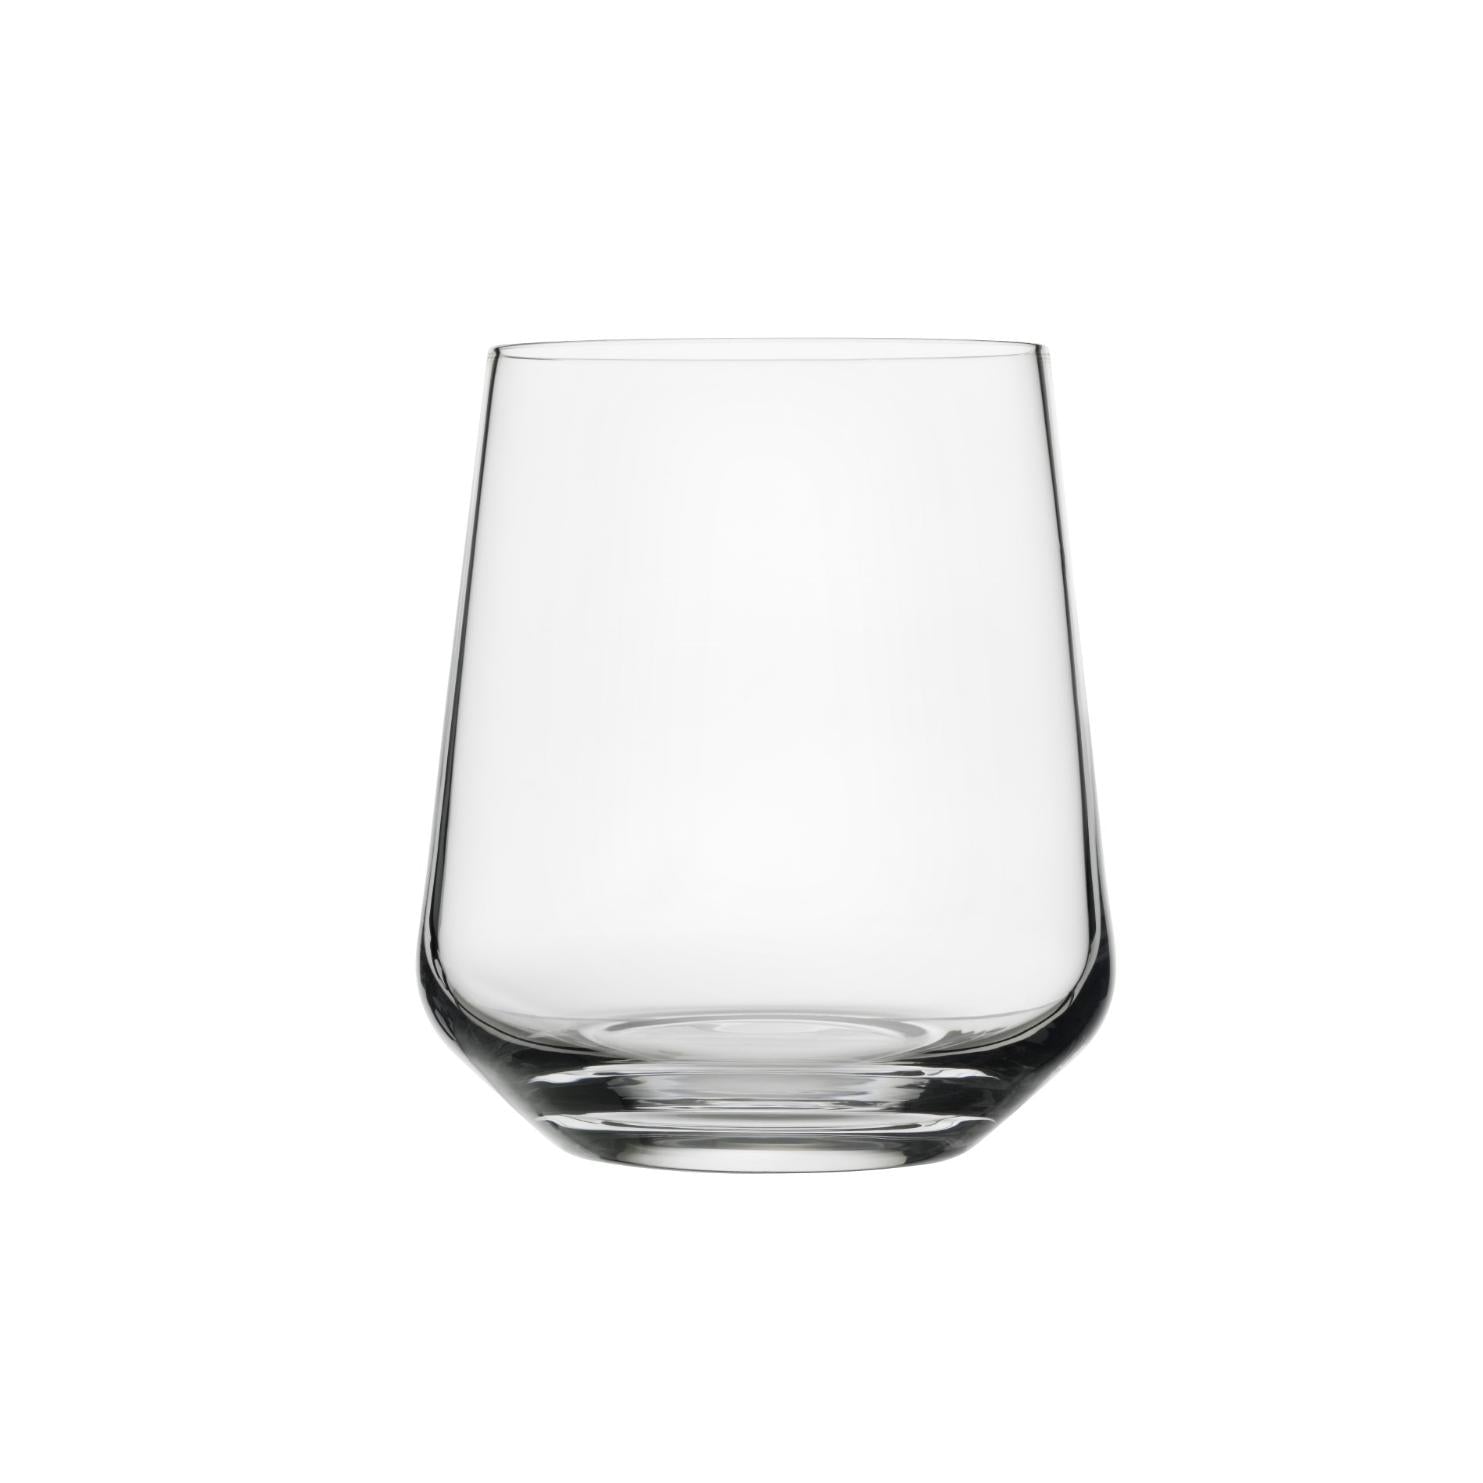 Iittala esencia de vidrio de agua Clear 2pcs, 35Cl